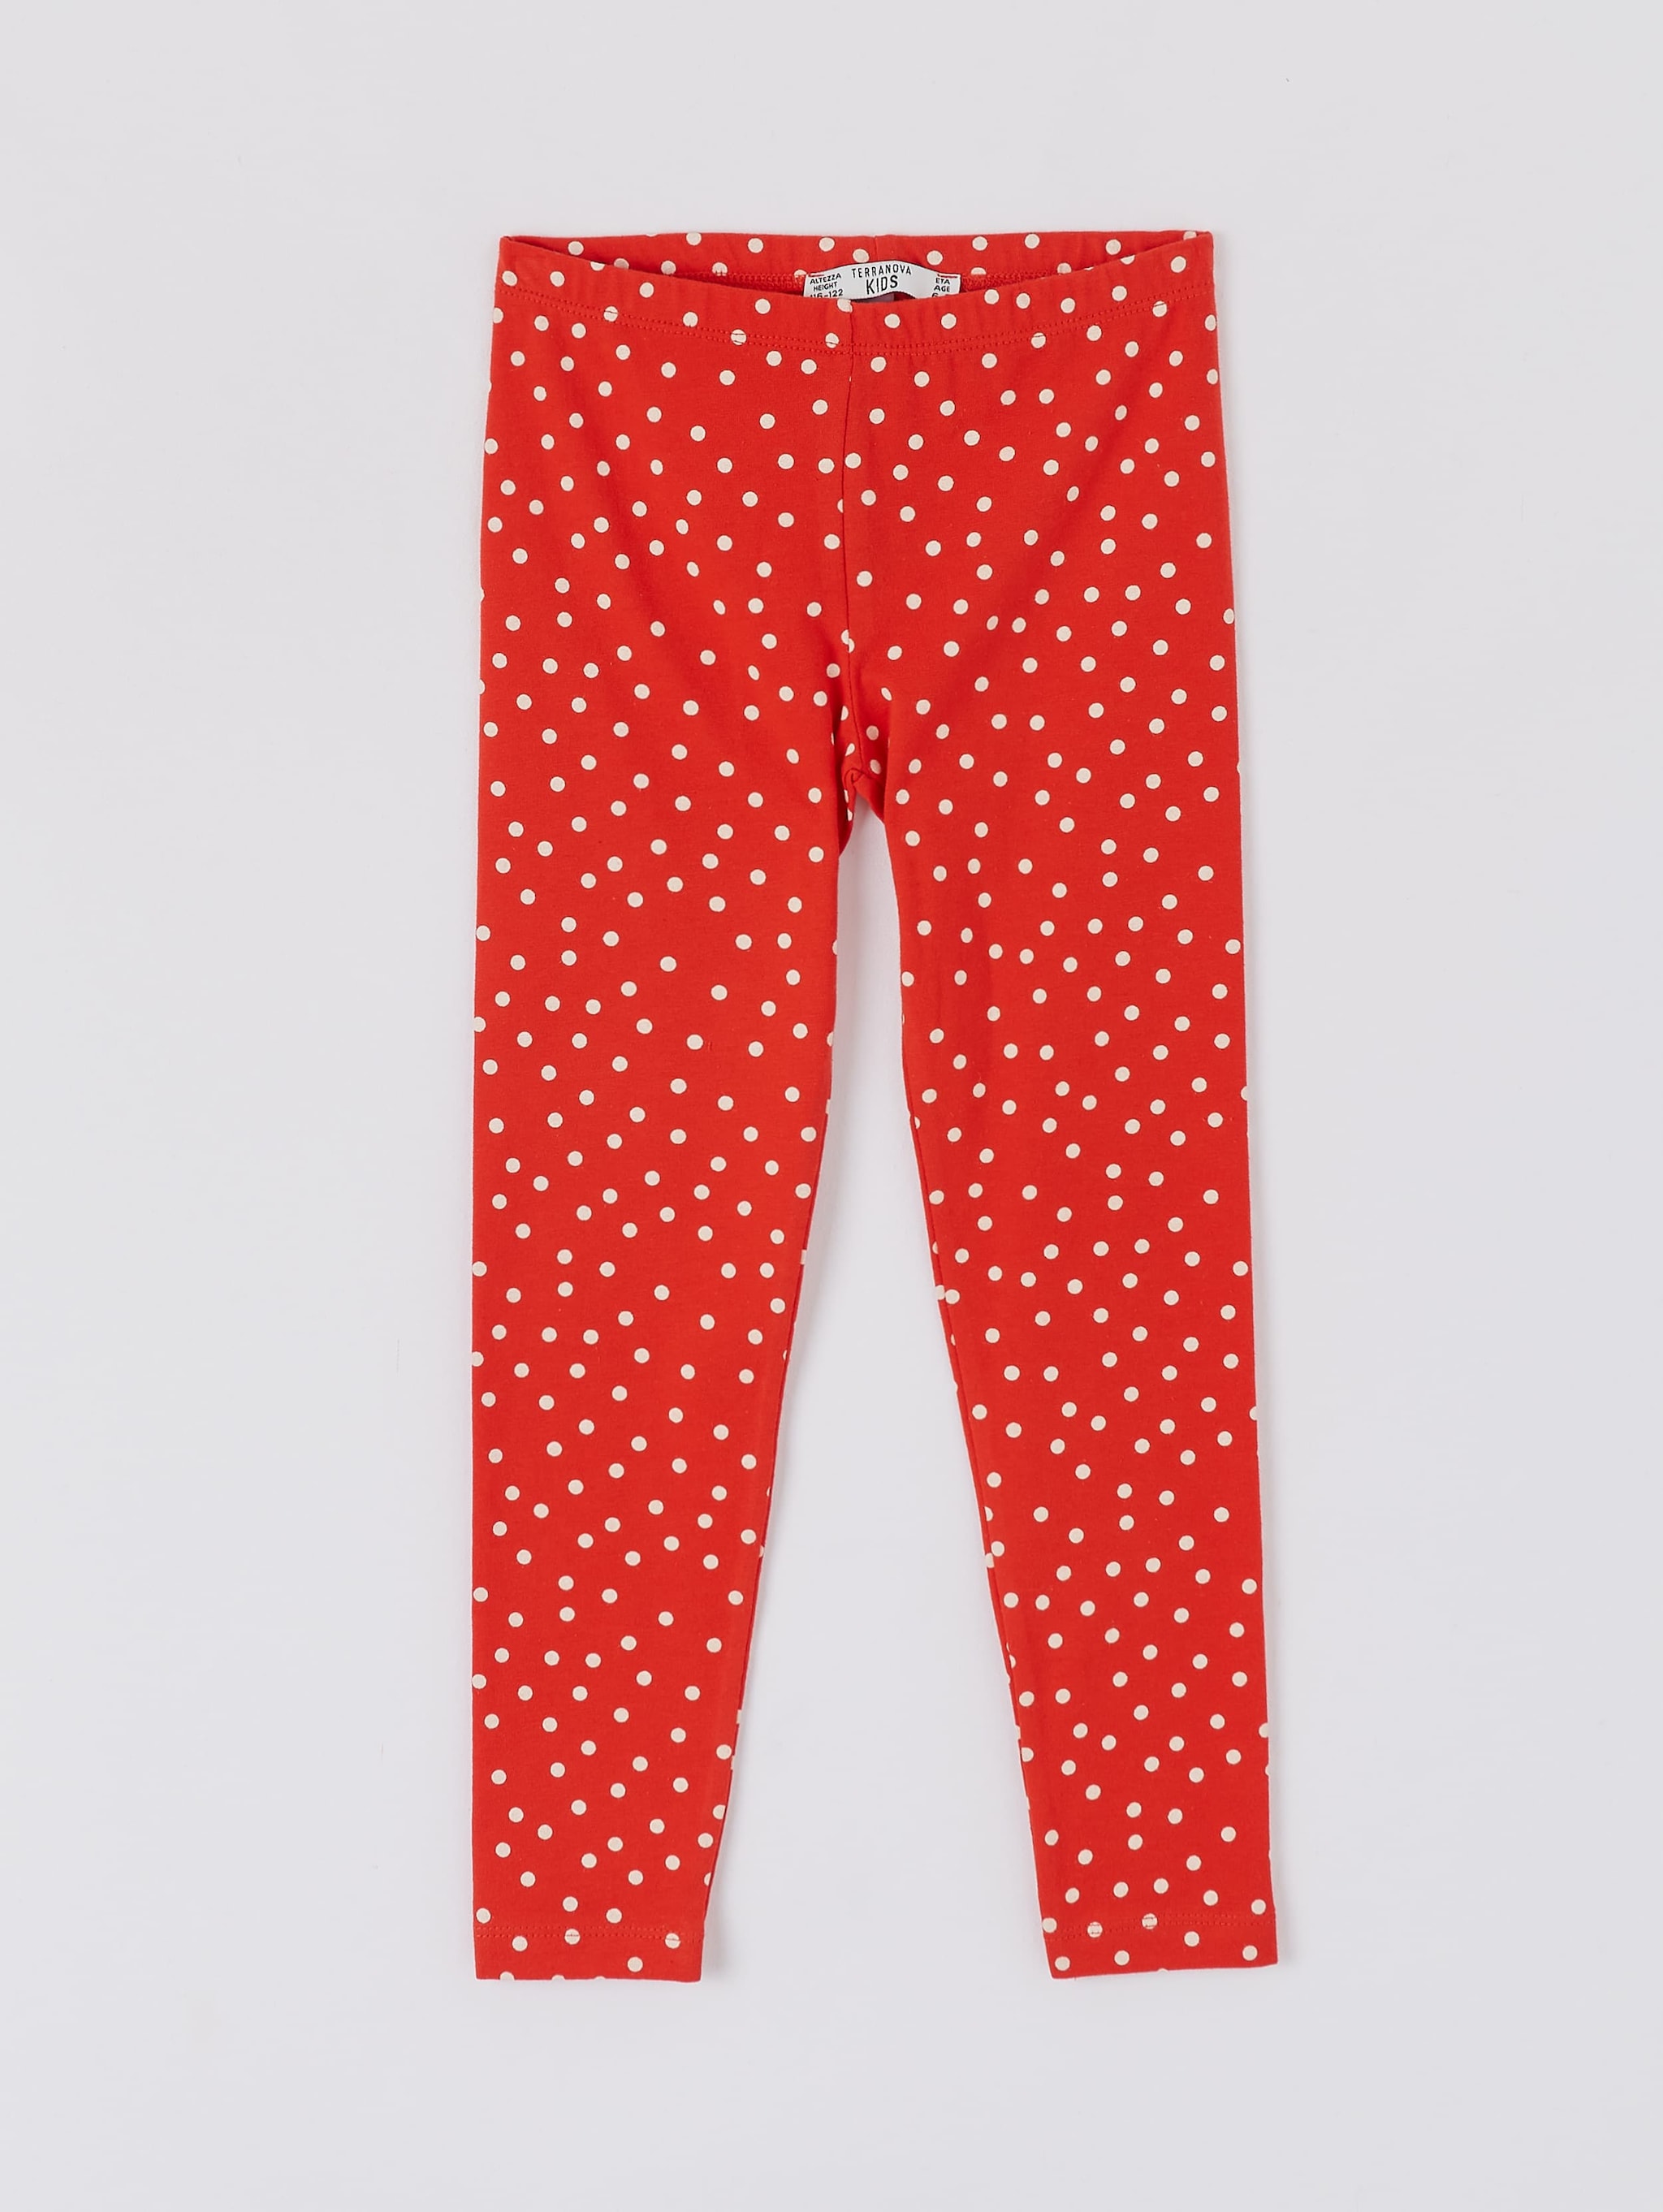 Var red Polka dot leggings - Buy Online 